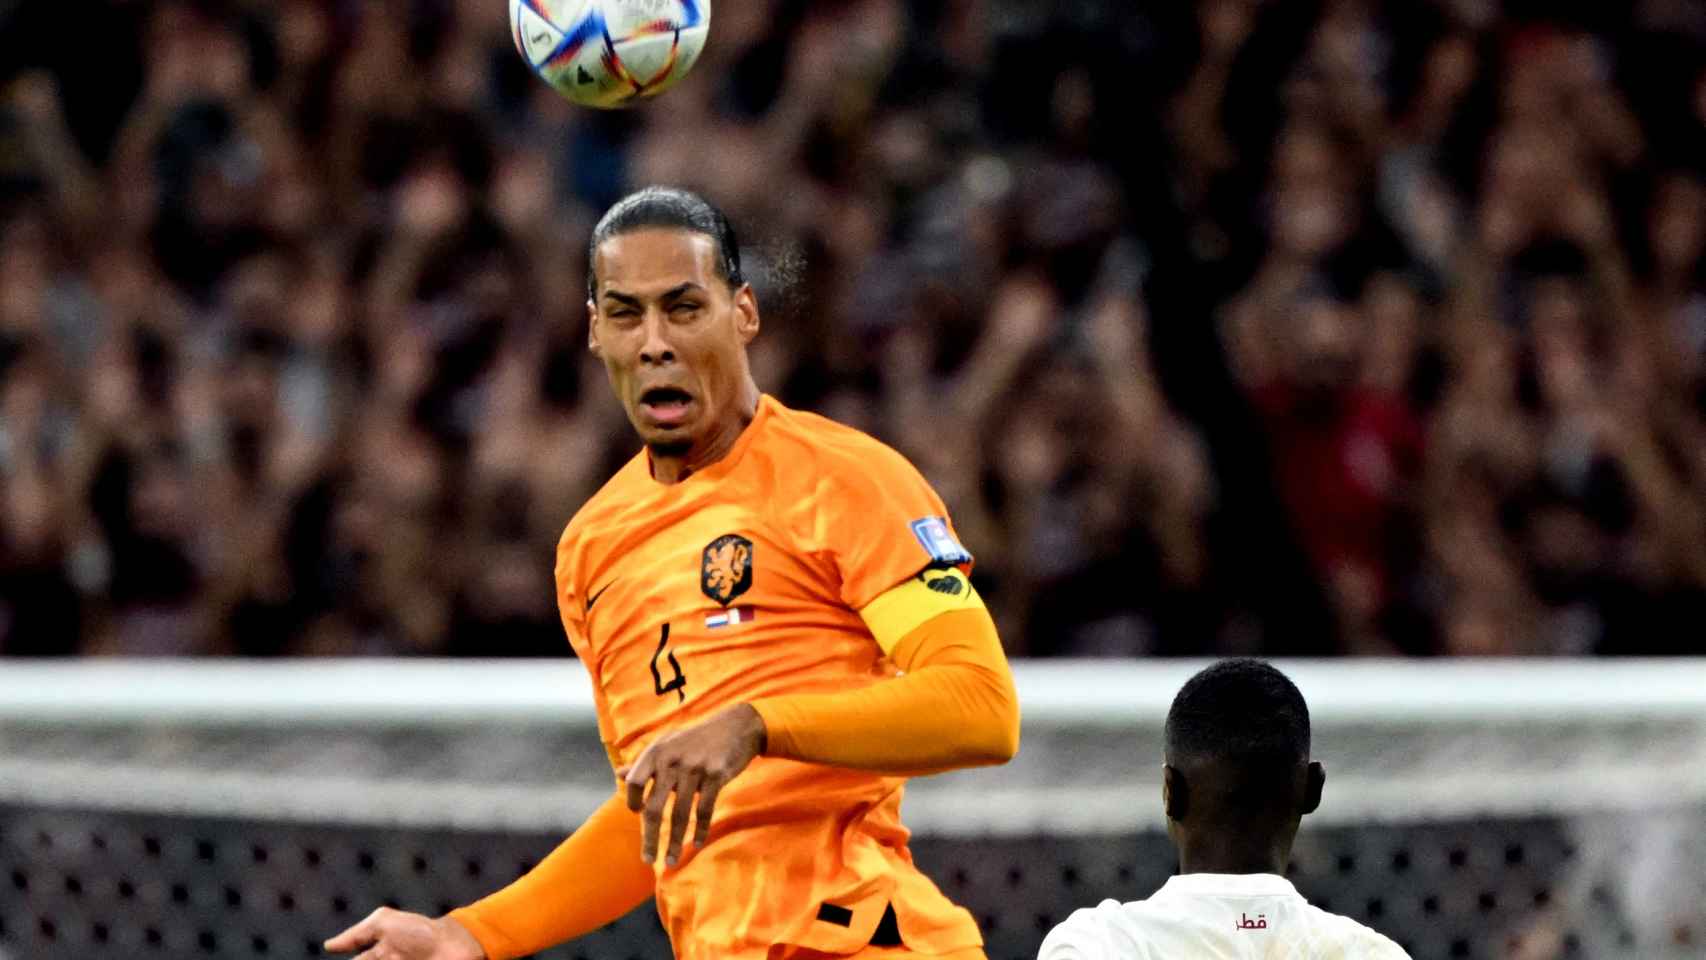 Virgil van Dijk despeja un balón con la selección de Países Bajos